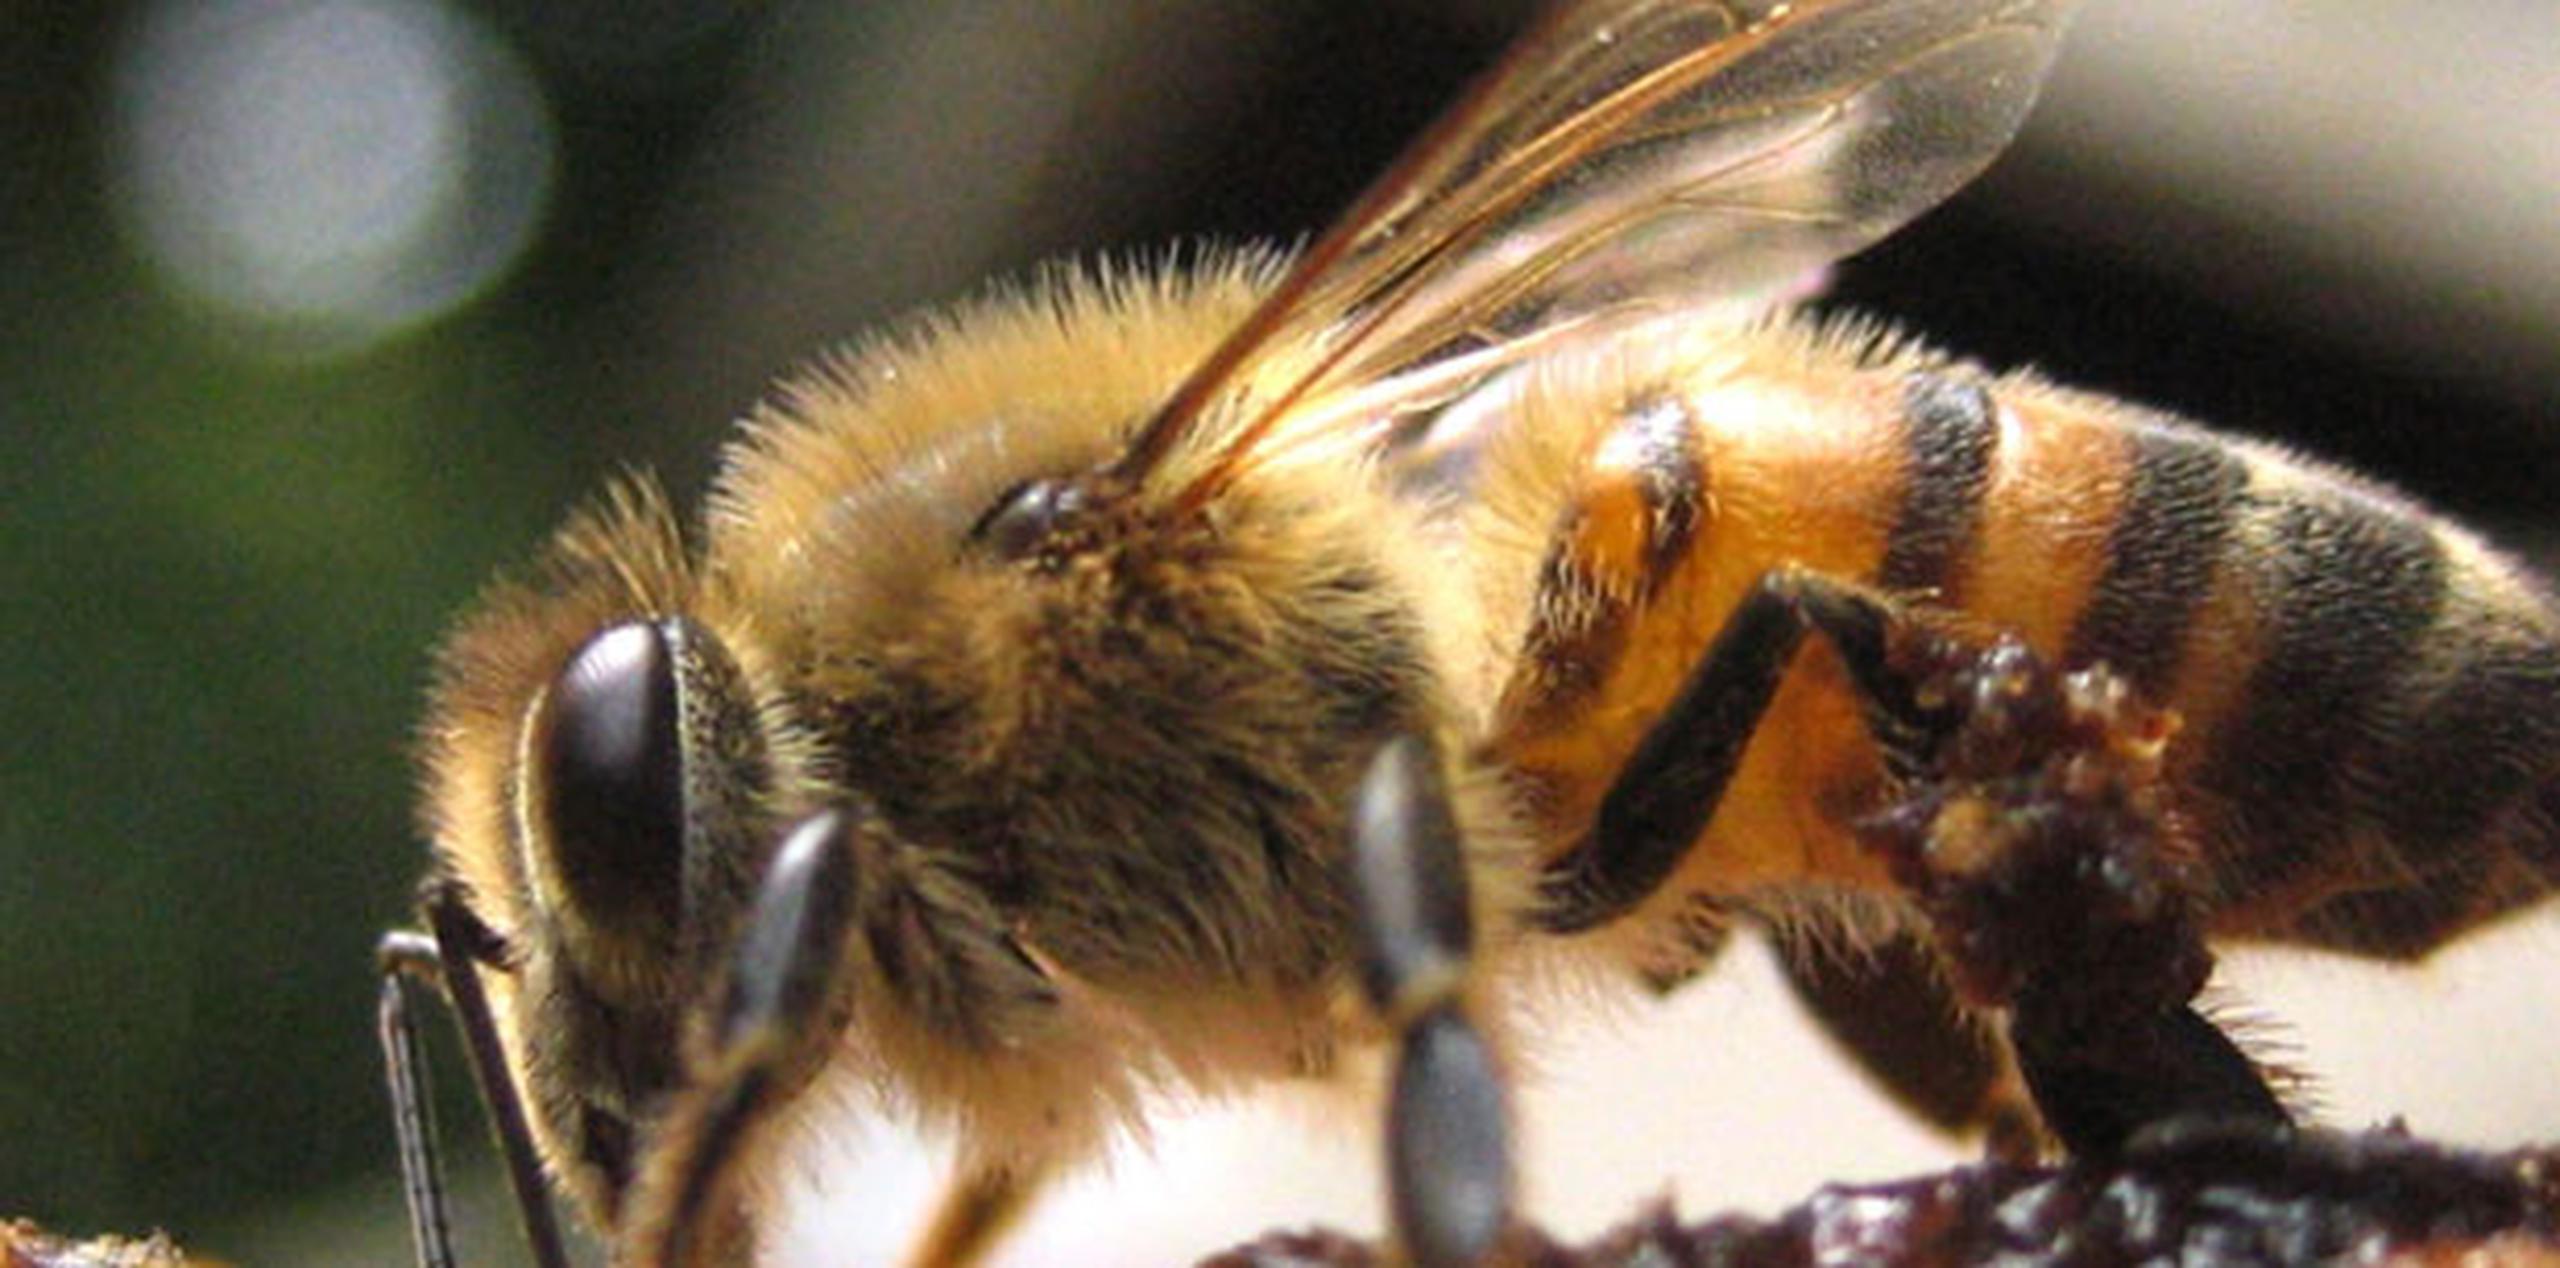 Nuestra abeja es dócil y mercadeable, a juicio de la comunidad científica que la estudia. (Archivo)